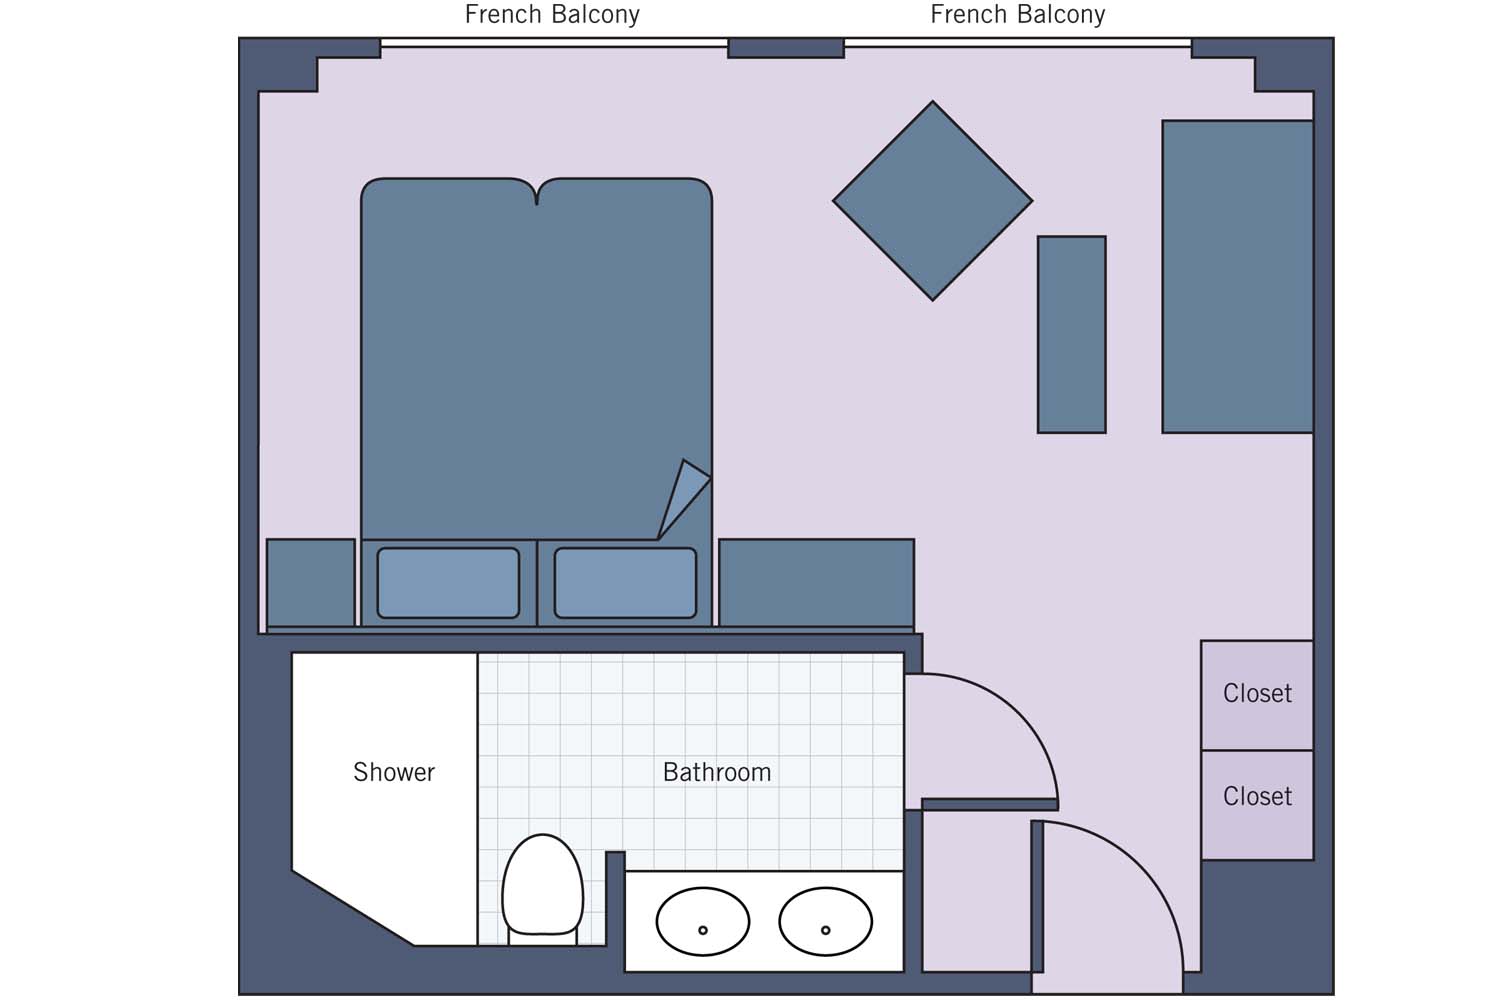 UNI River Baroness Suite floor plan